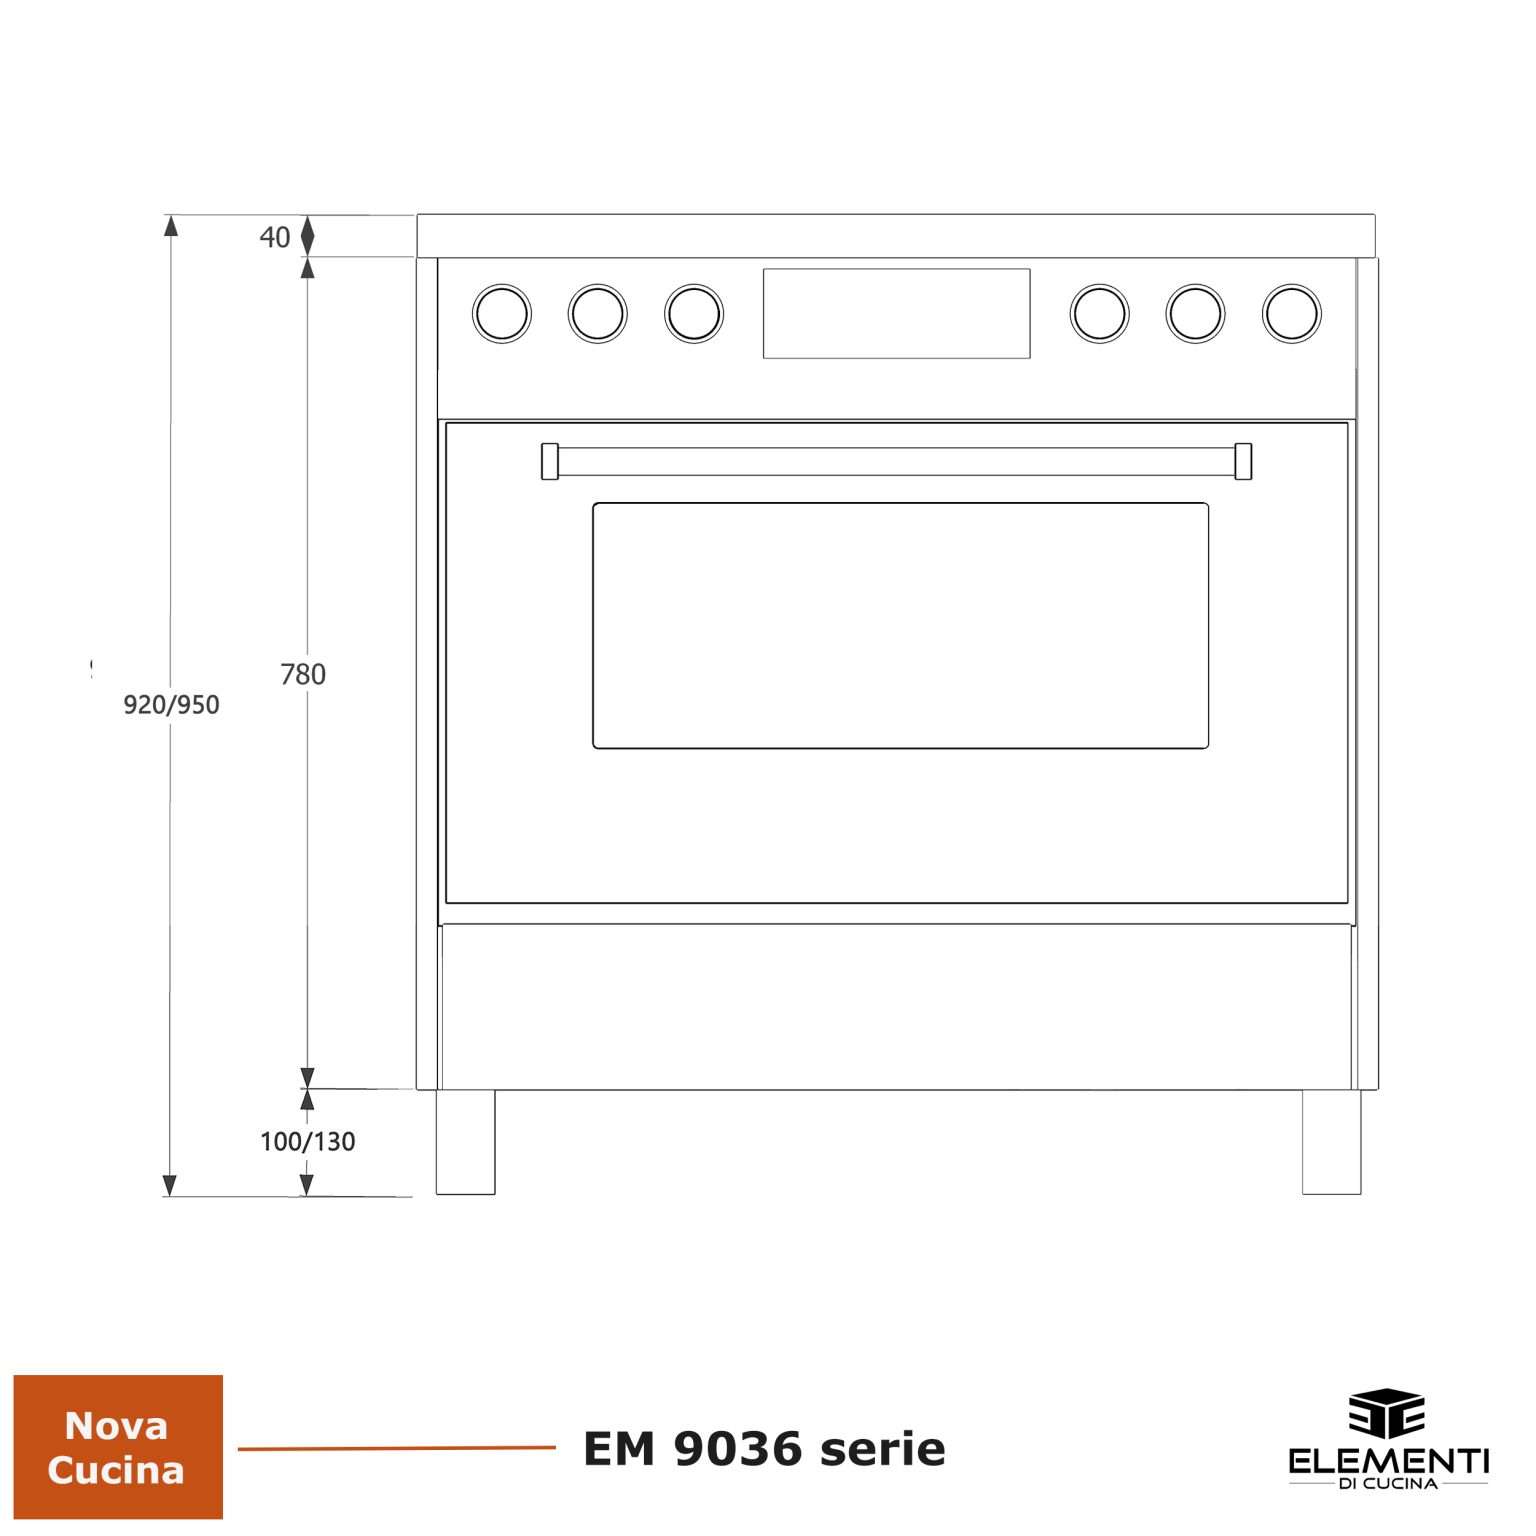 Maattekening ELEMENTI DI CUCINA fornuis inductie EM9036-ZW-S